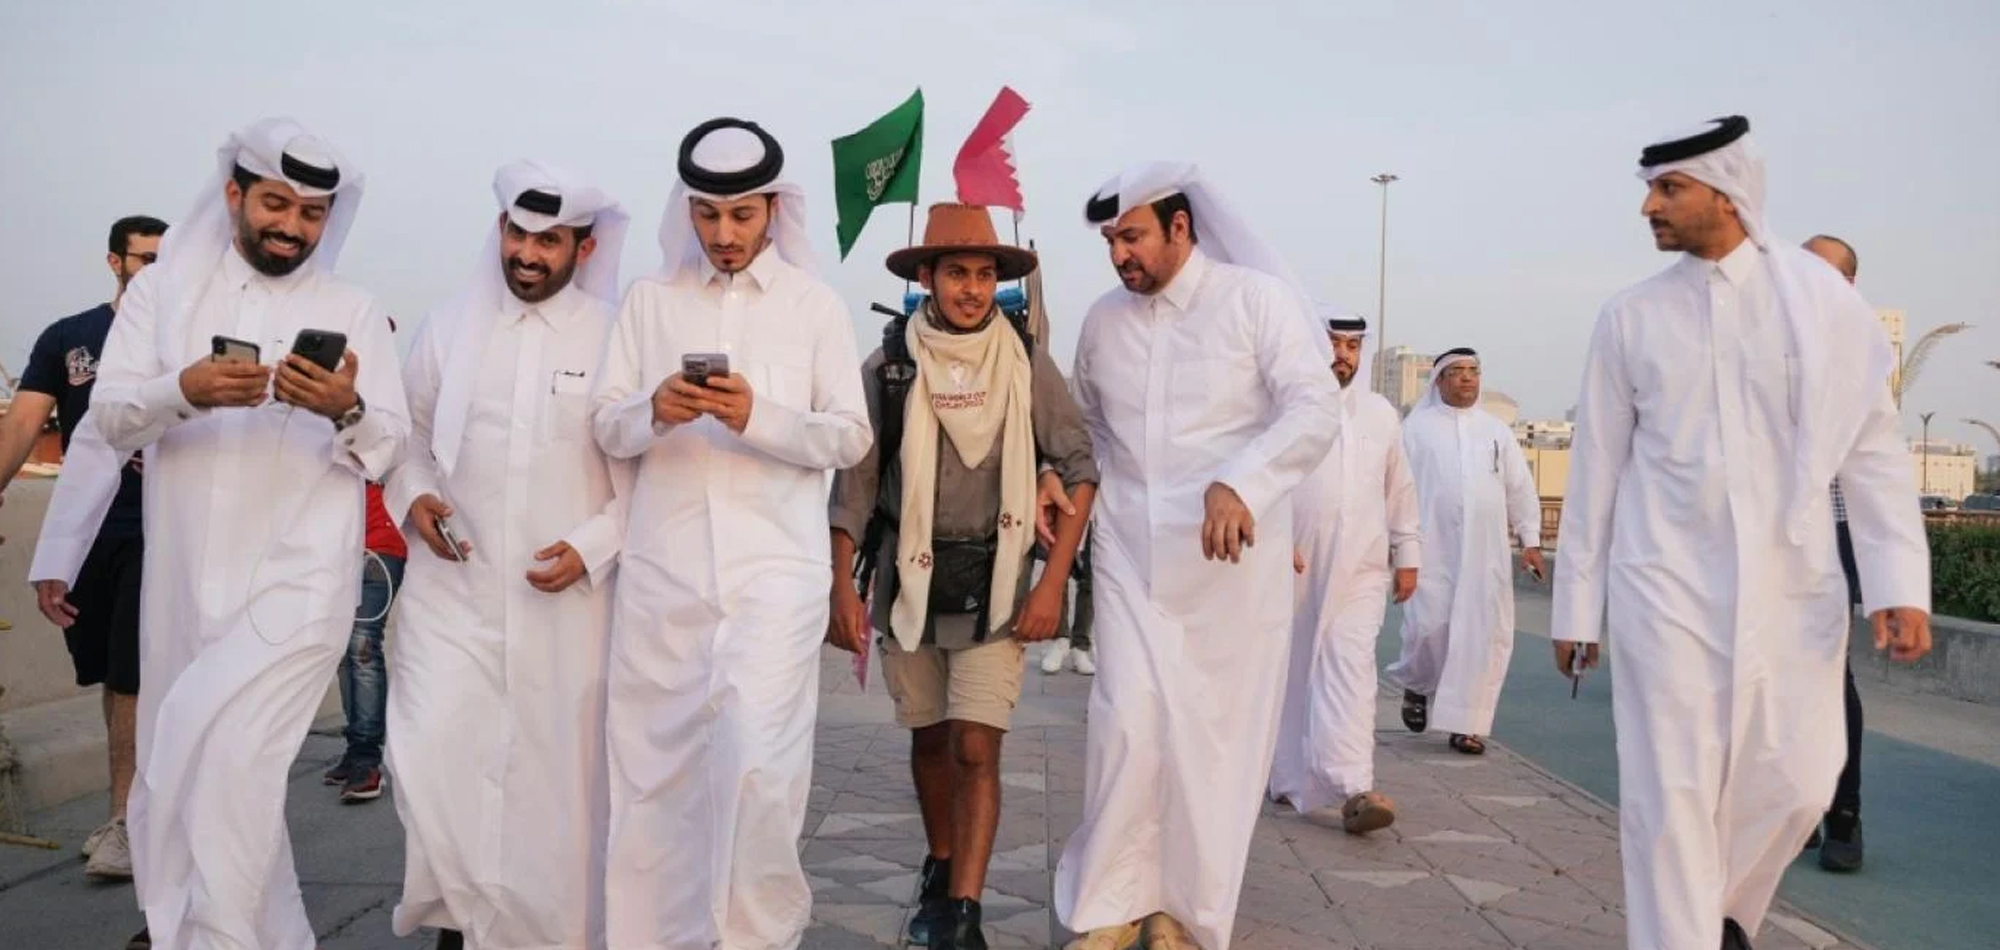 Saudi Arabia fan treks 1,600km across the Arabian Desert to attend Qatar 2022